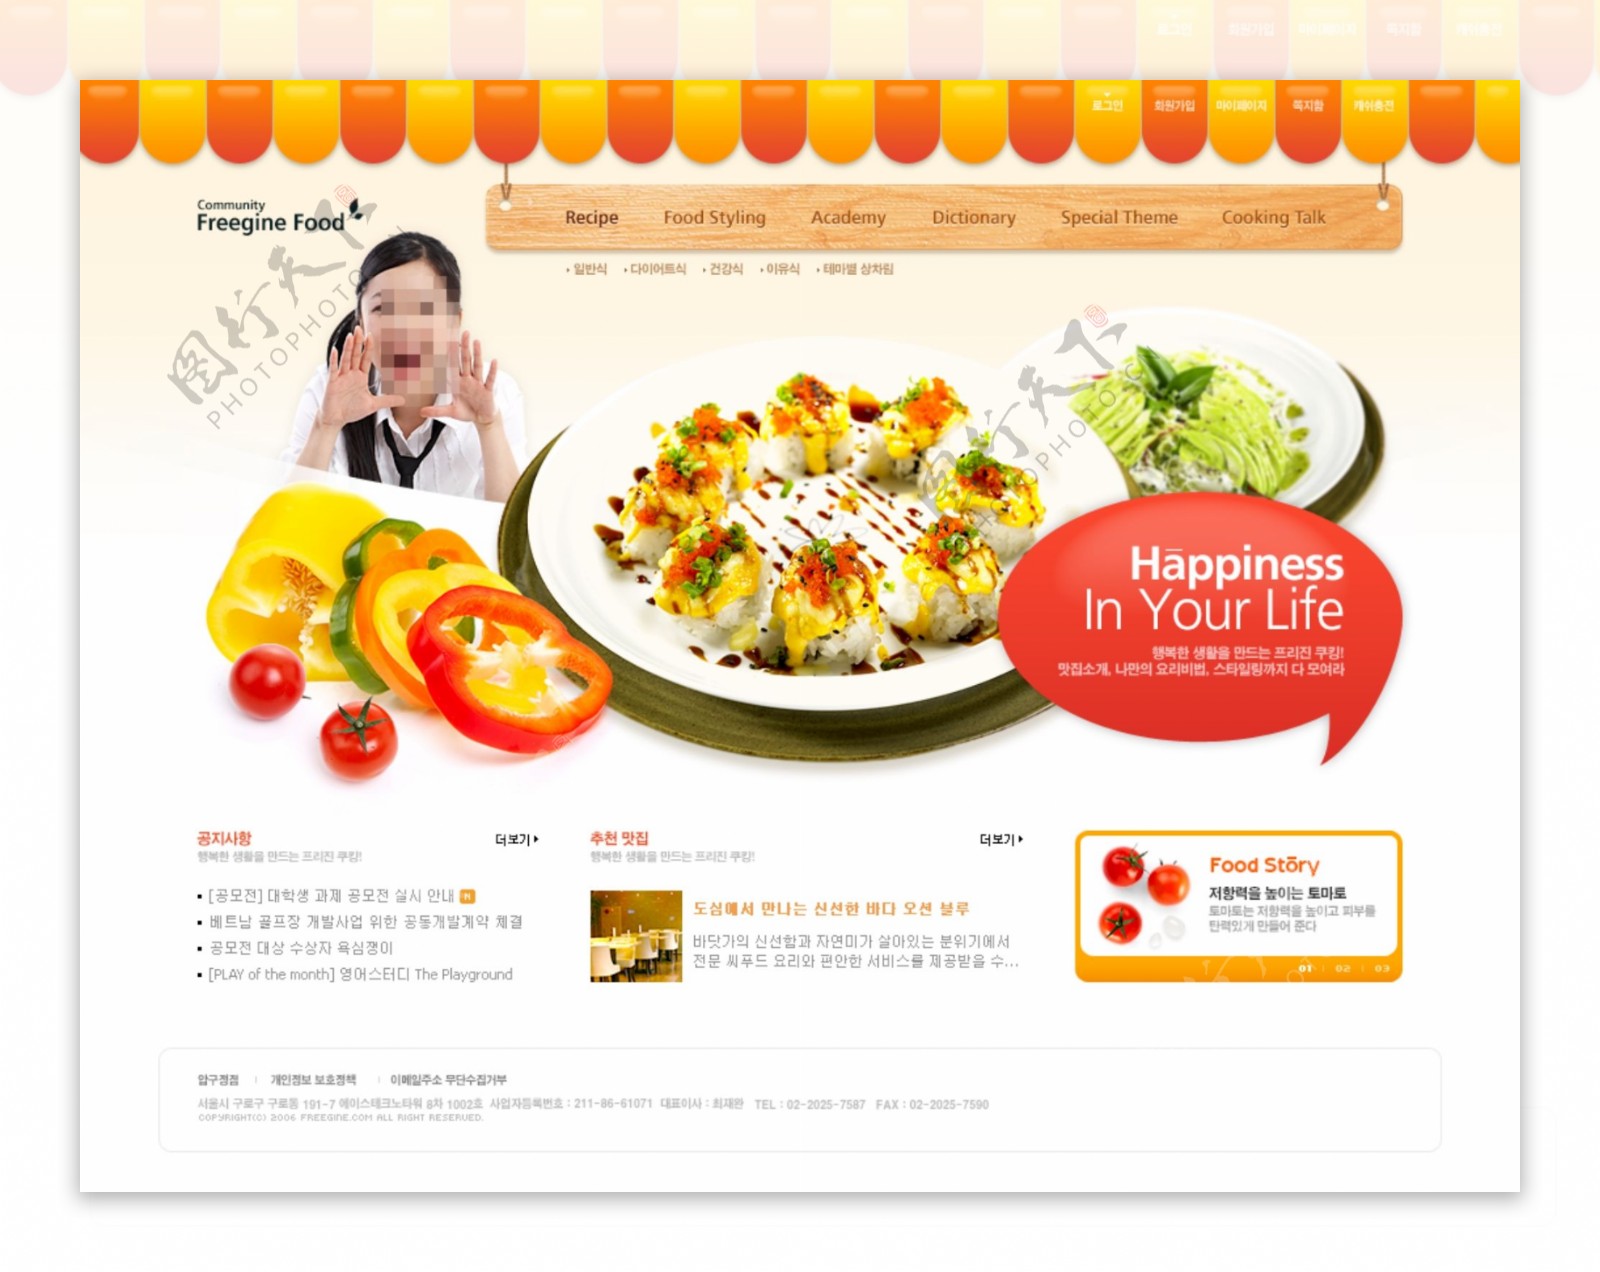 商业网页设计模板图片